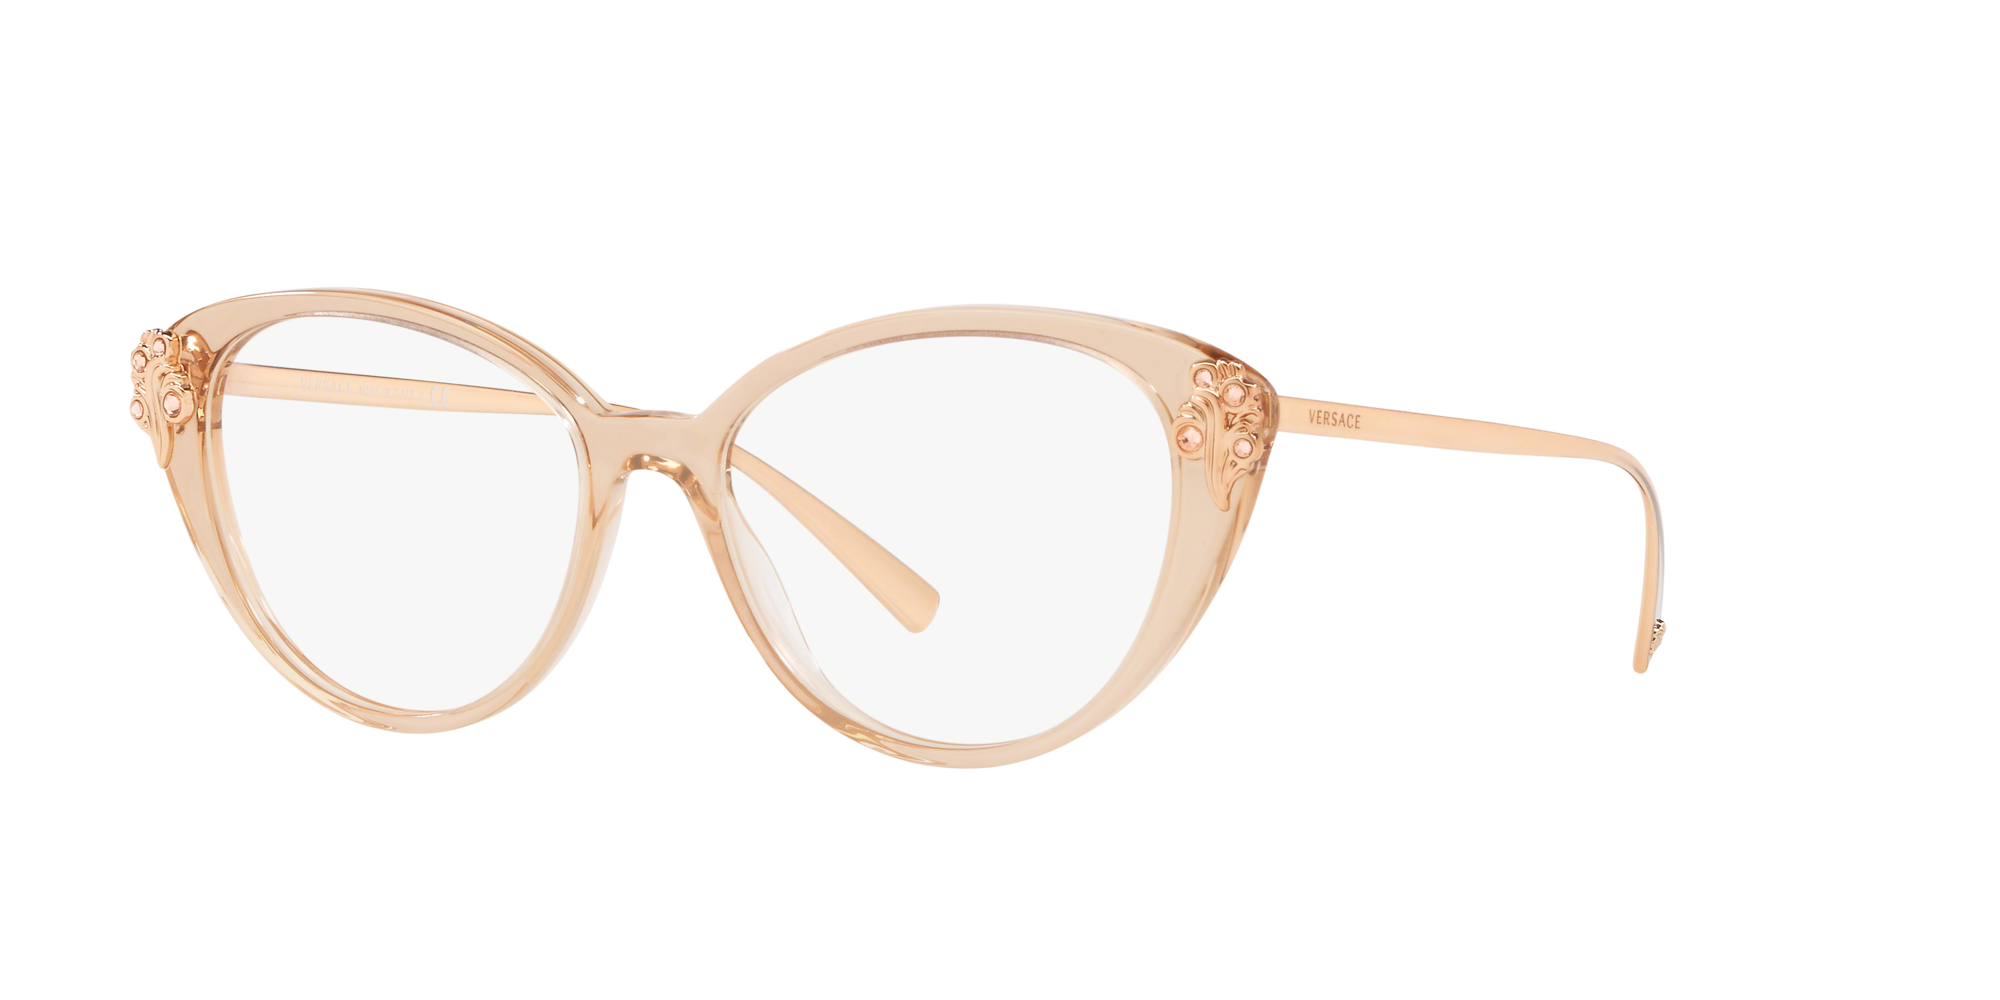 versace eyeglasses 2017